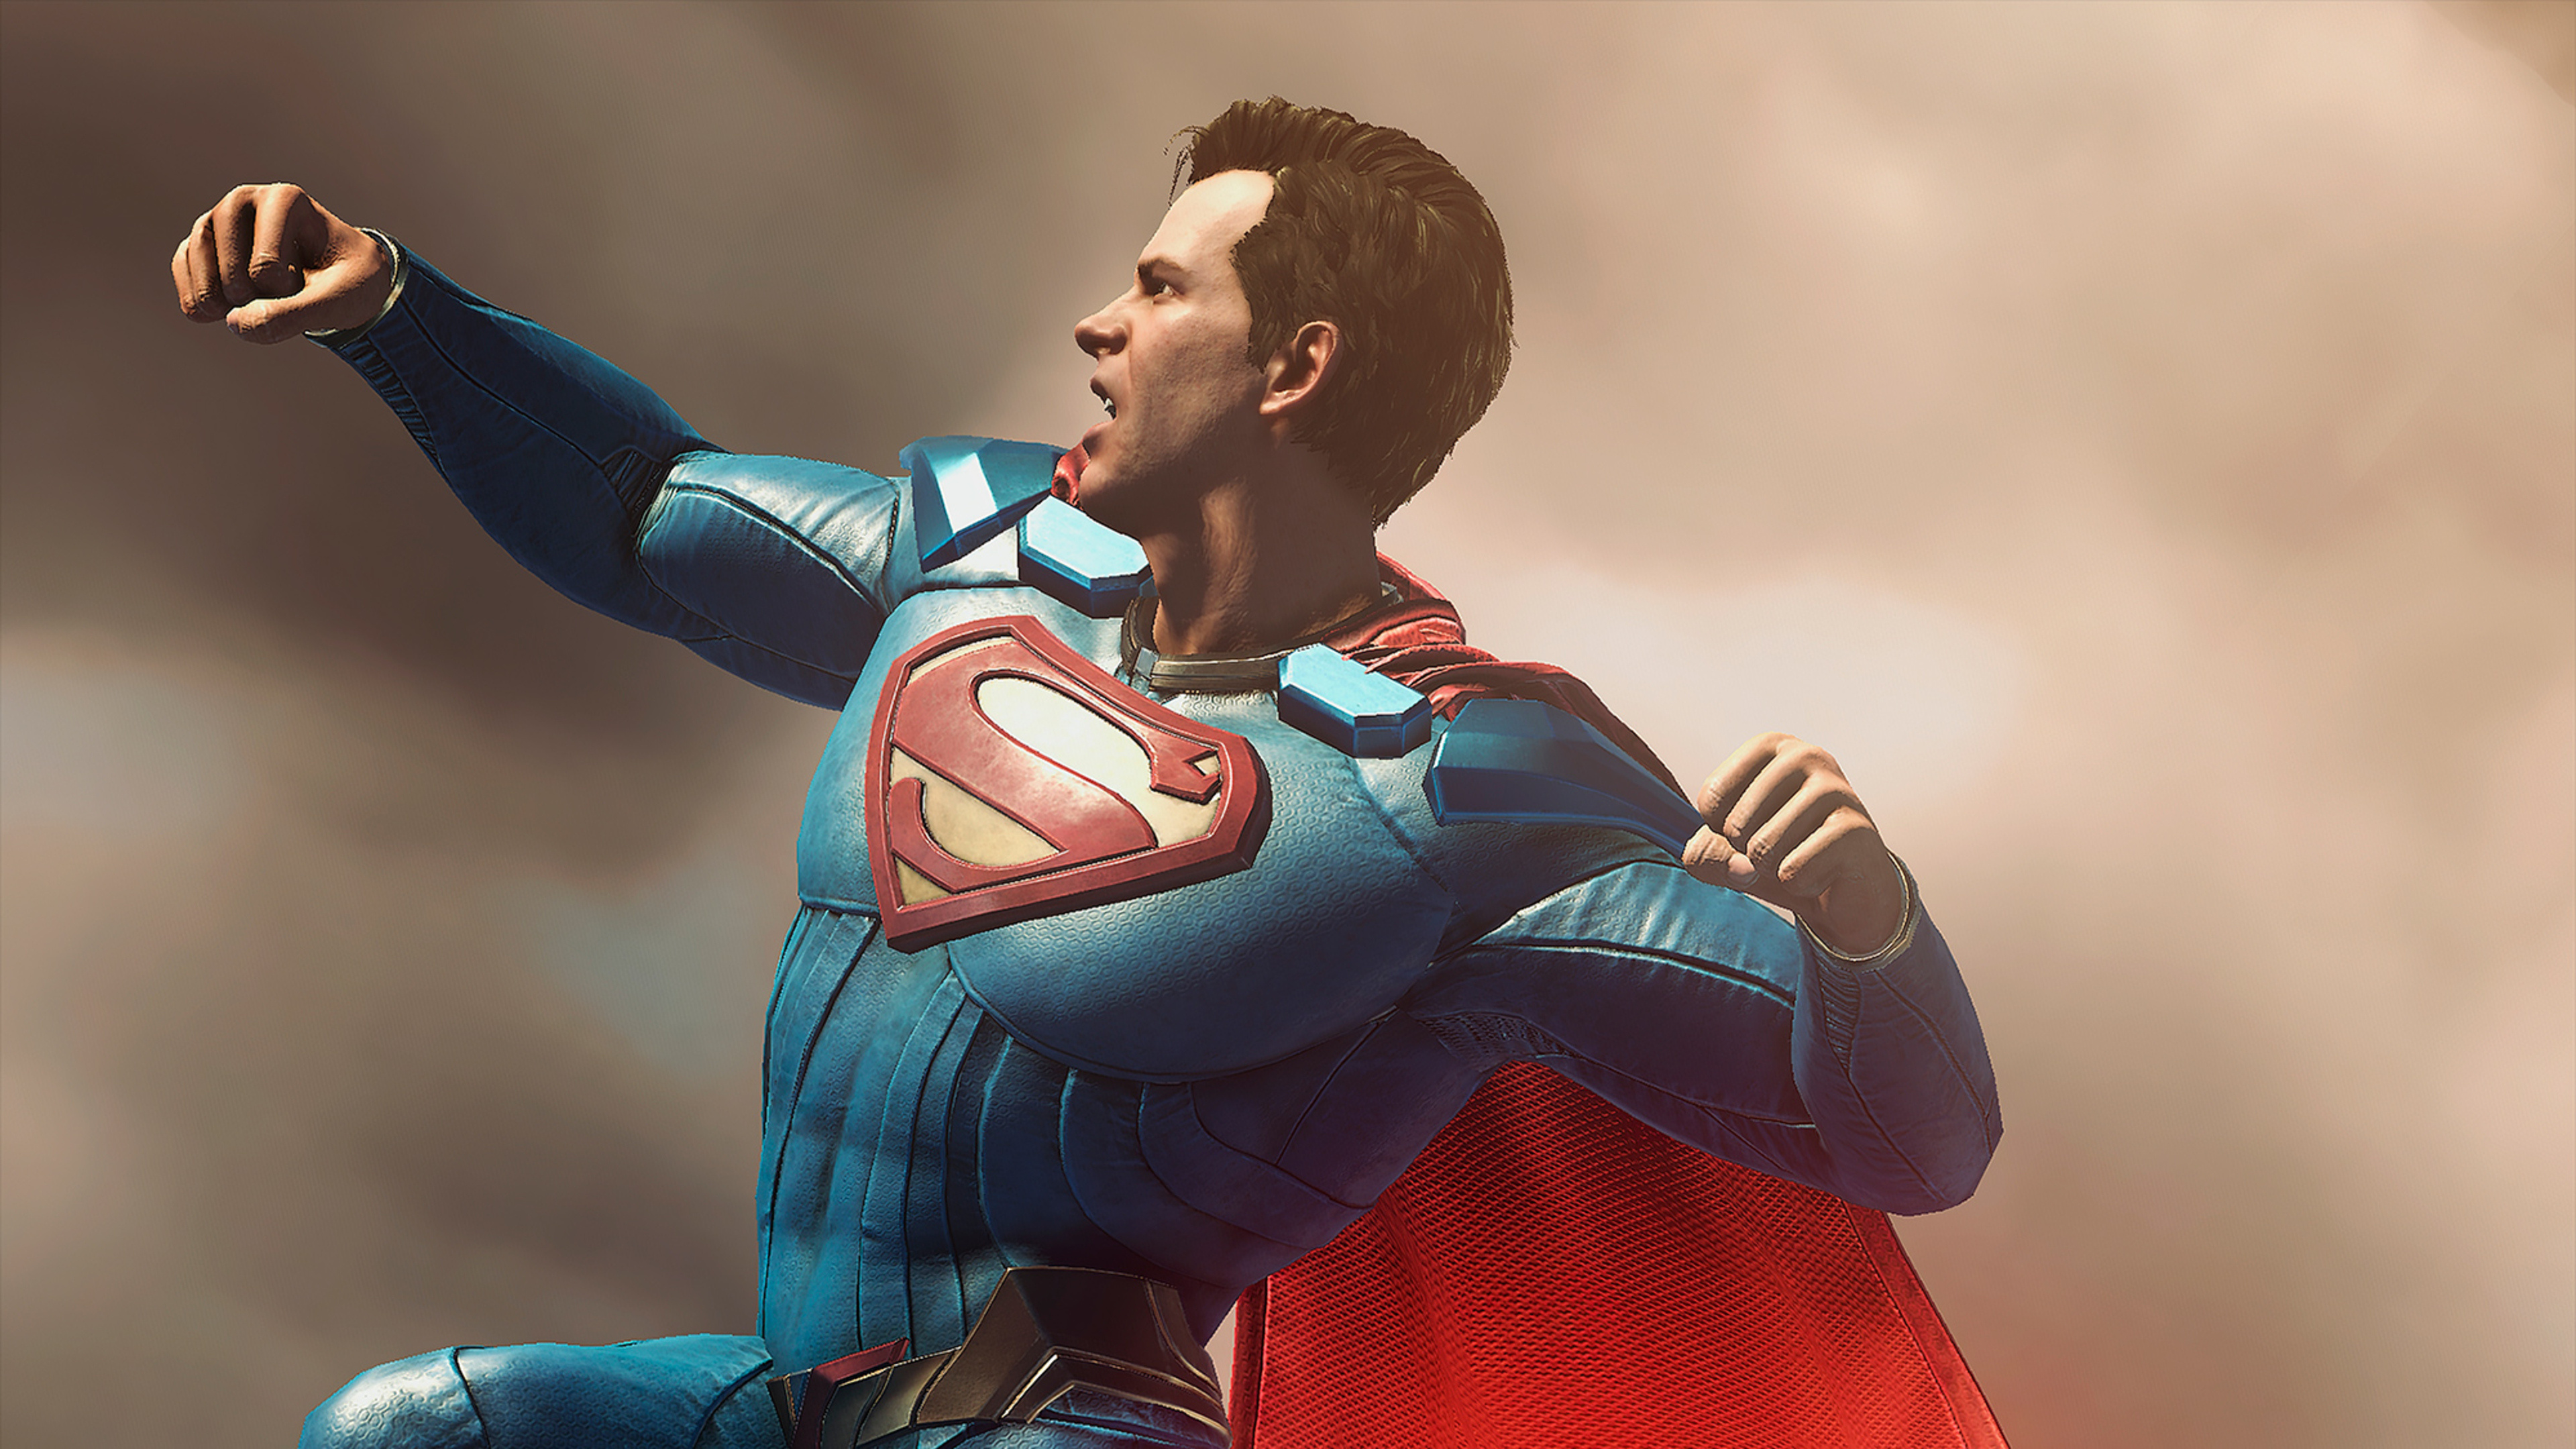 Супермен против супермена 2. Супермен Инджастис 2. Injustice 2 Superman. Супермен из Инджастис 2. Инджастис 1 Супермен.